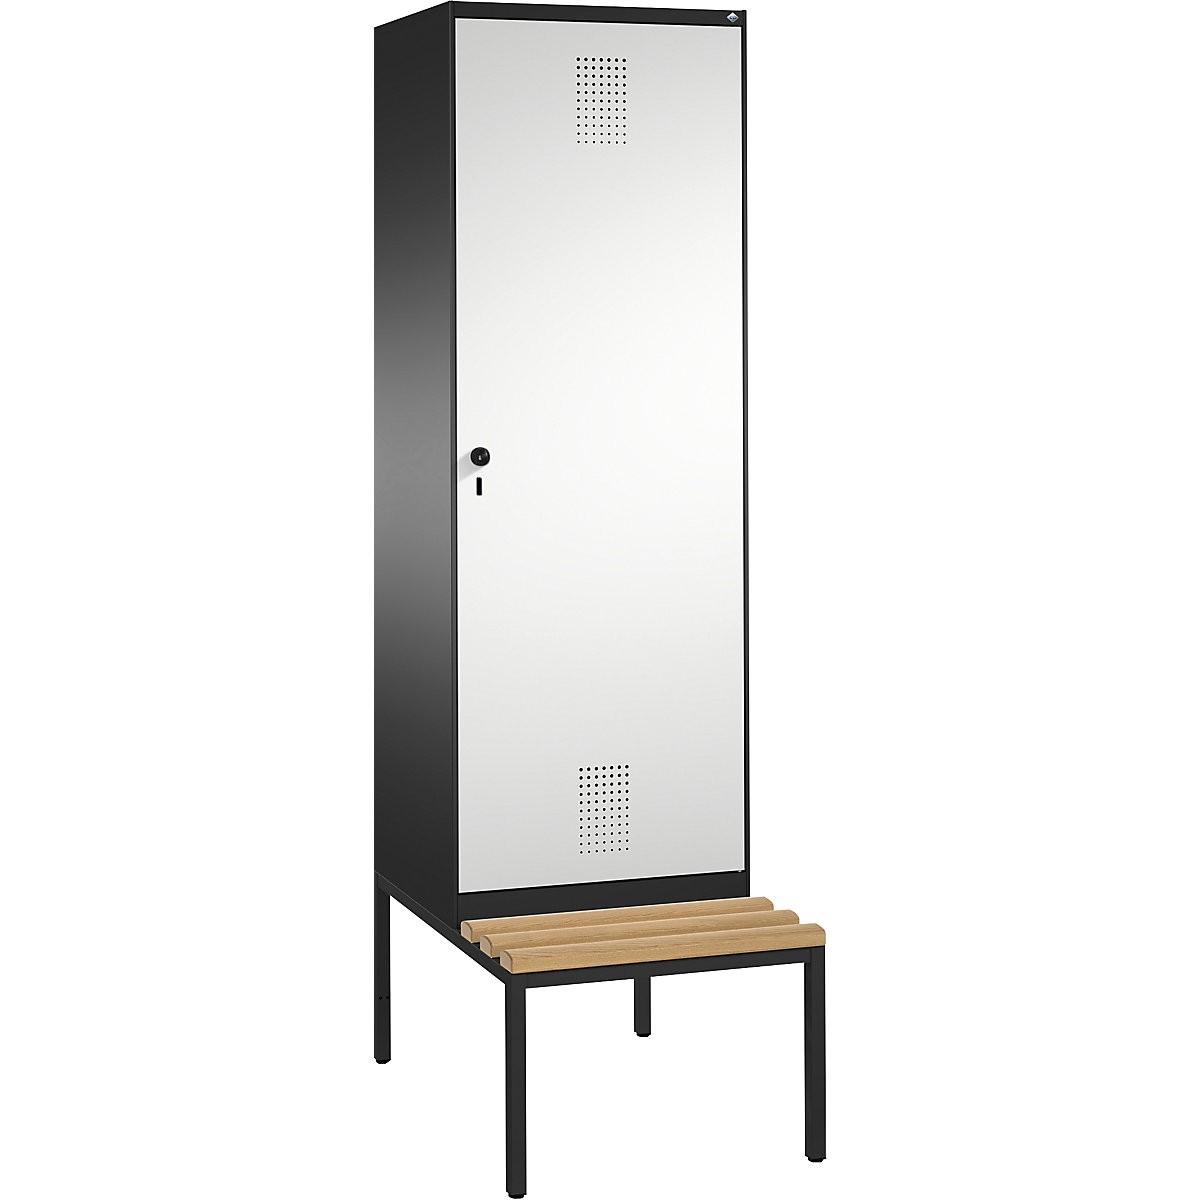 Šatní skříň s lavicí EVOLO s dveřmi přes 2 oddíly – C+P, 2 oddíly, 1 dveře, šířka oddílu 300 mm, černošedá / světlá šedá-4